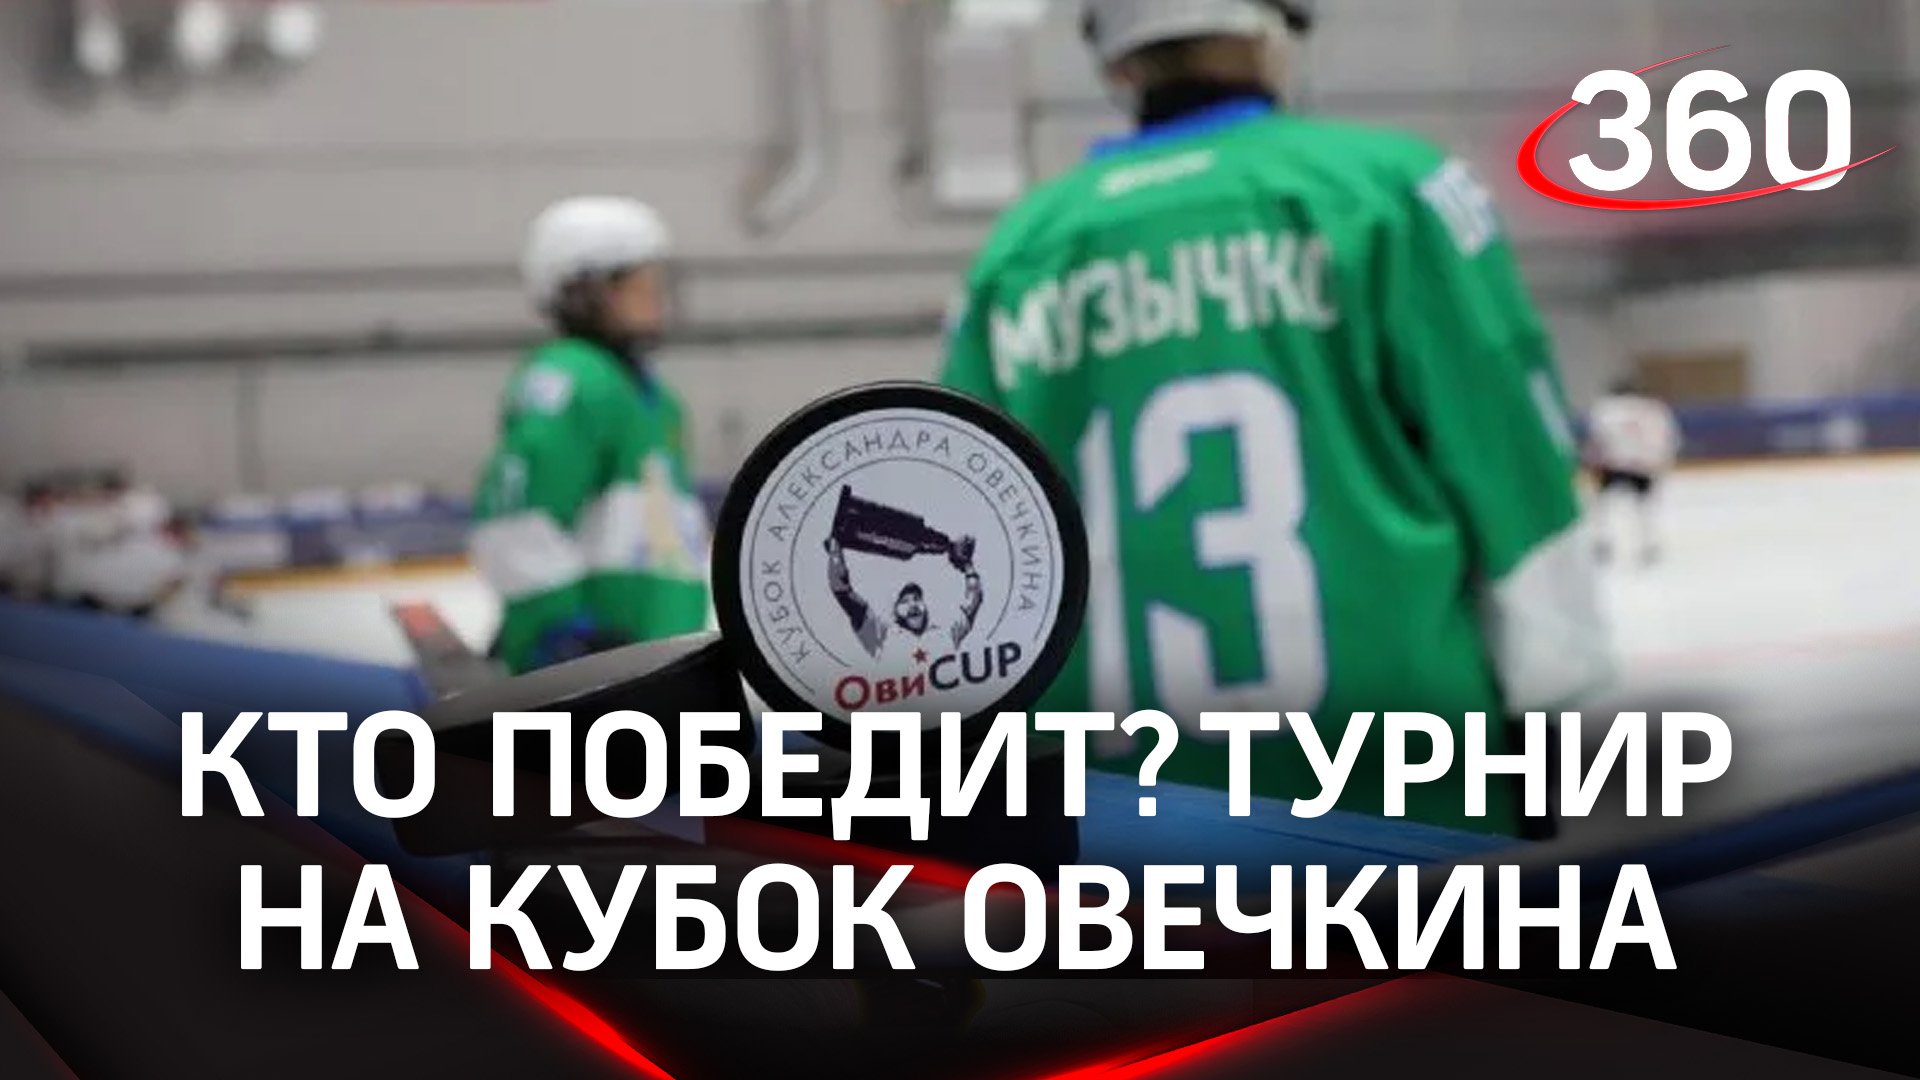 Стартовал хоккейный турнир на кубок Александра Овечкина в Подмосковье: кто же победит?